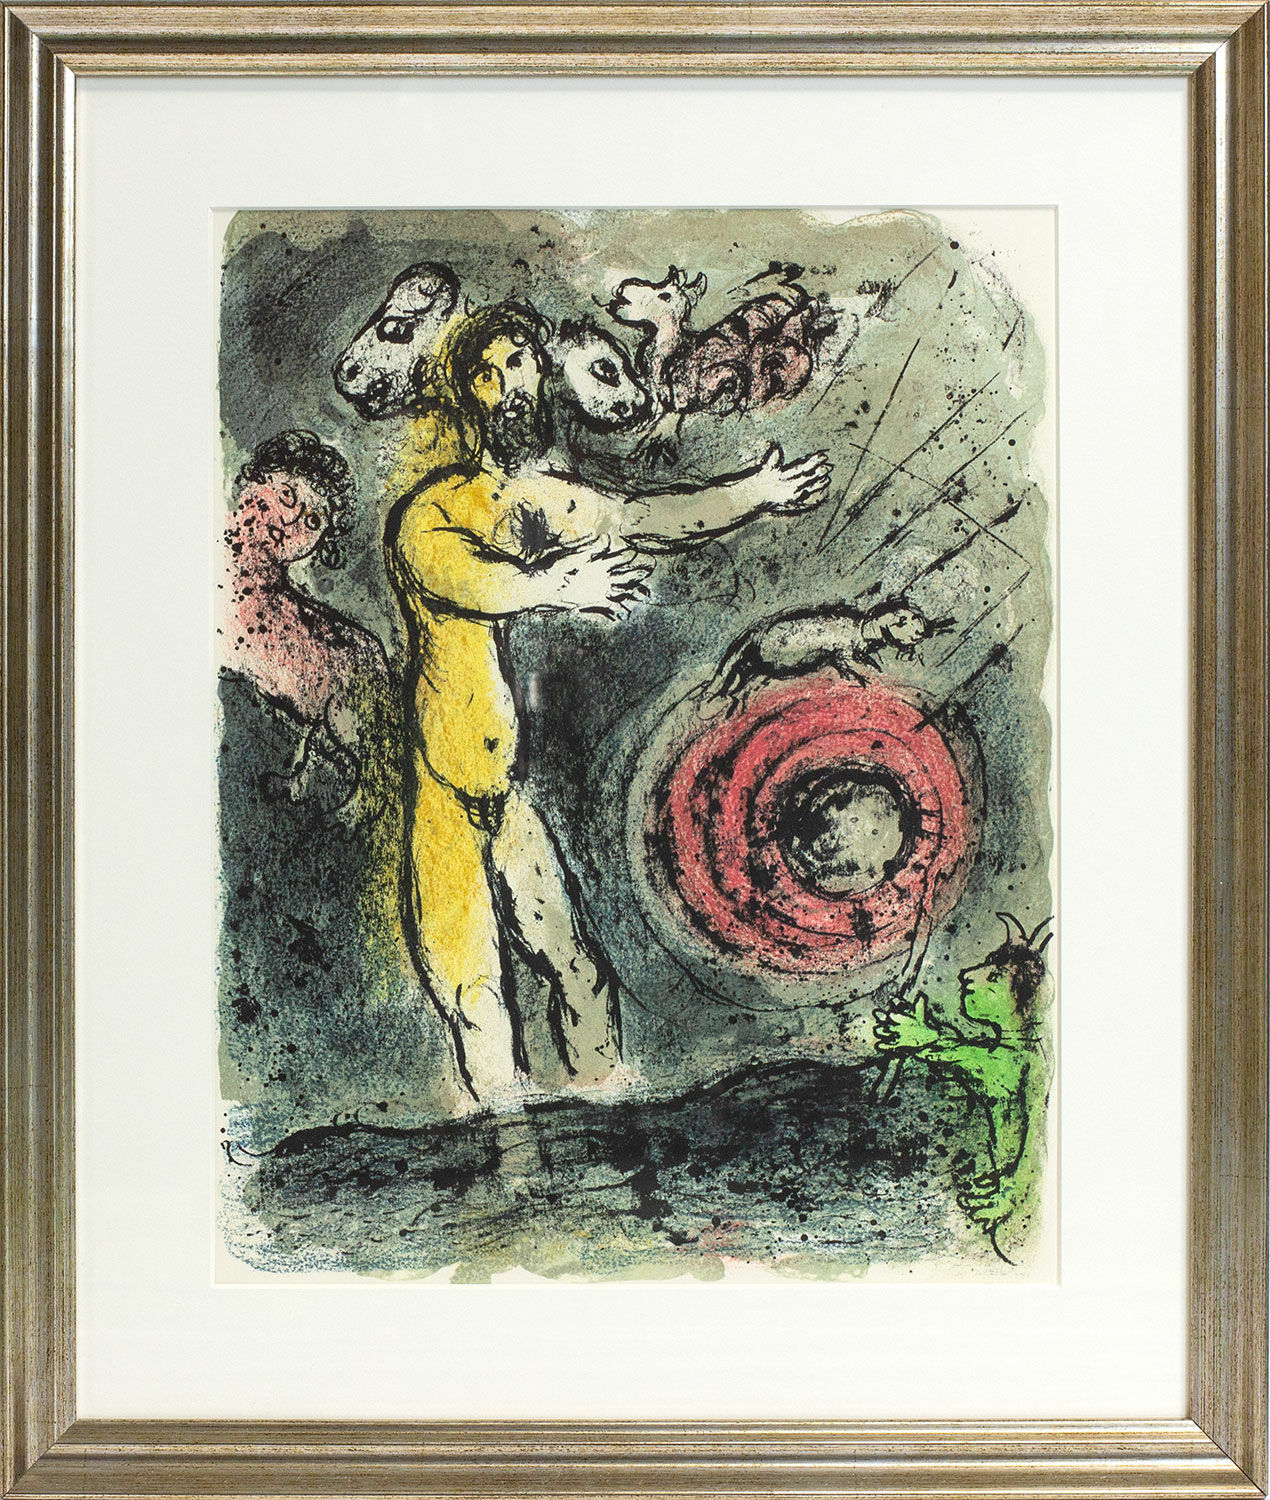 Bild "Odysséen - Proteus" (1989), inramad von Marc Chagall